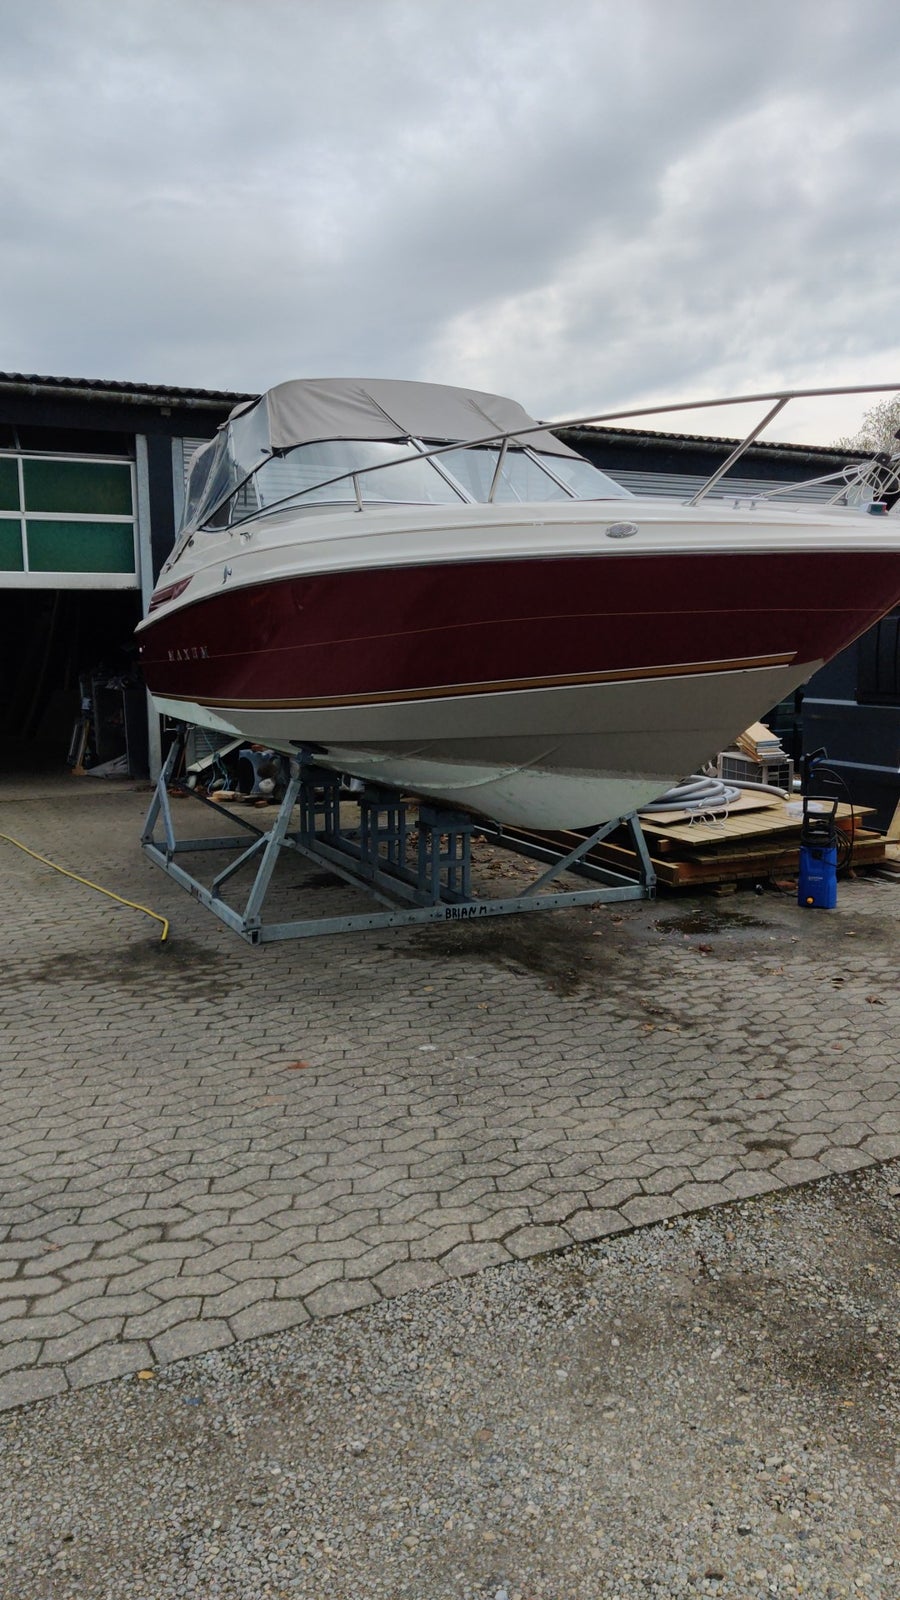 Motorbåd/speedbåd, Maxum 2300